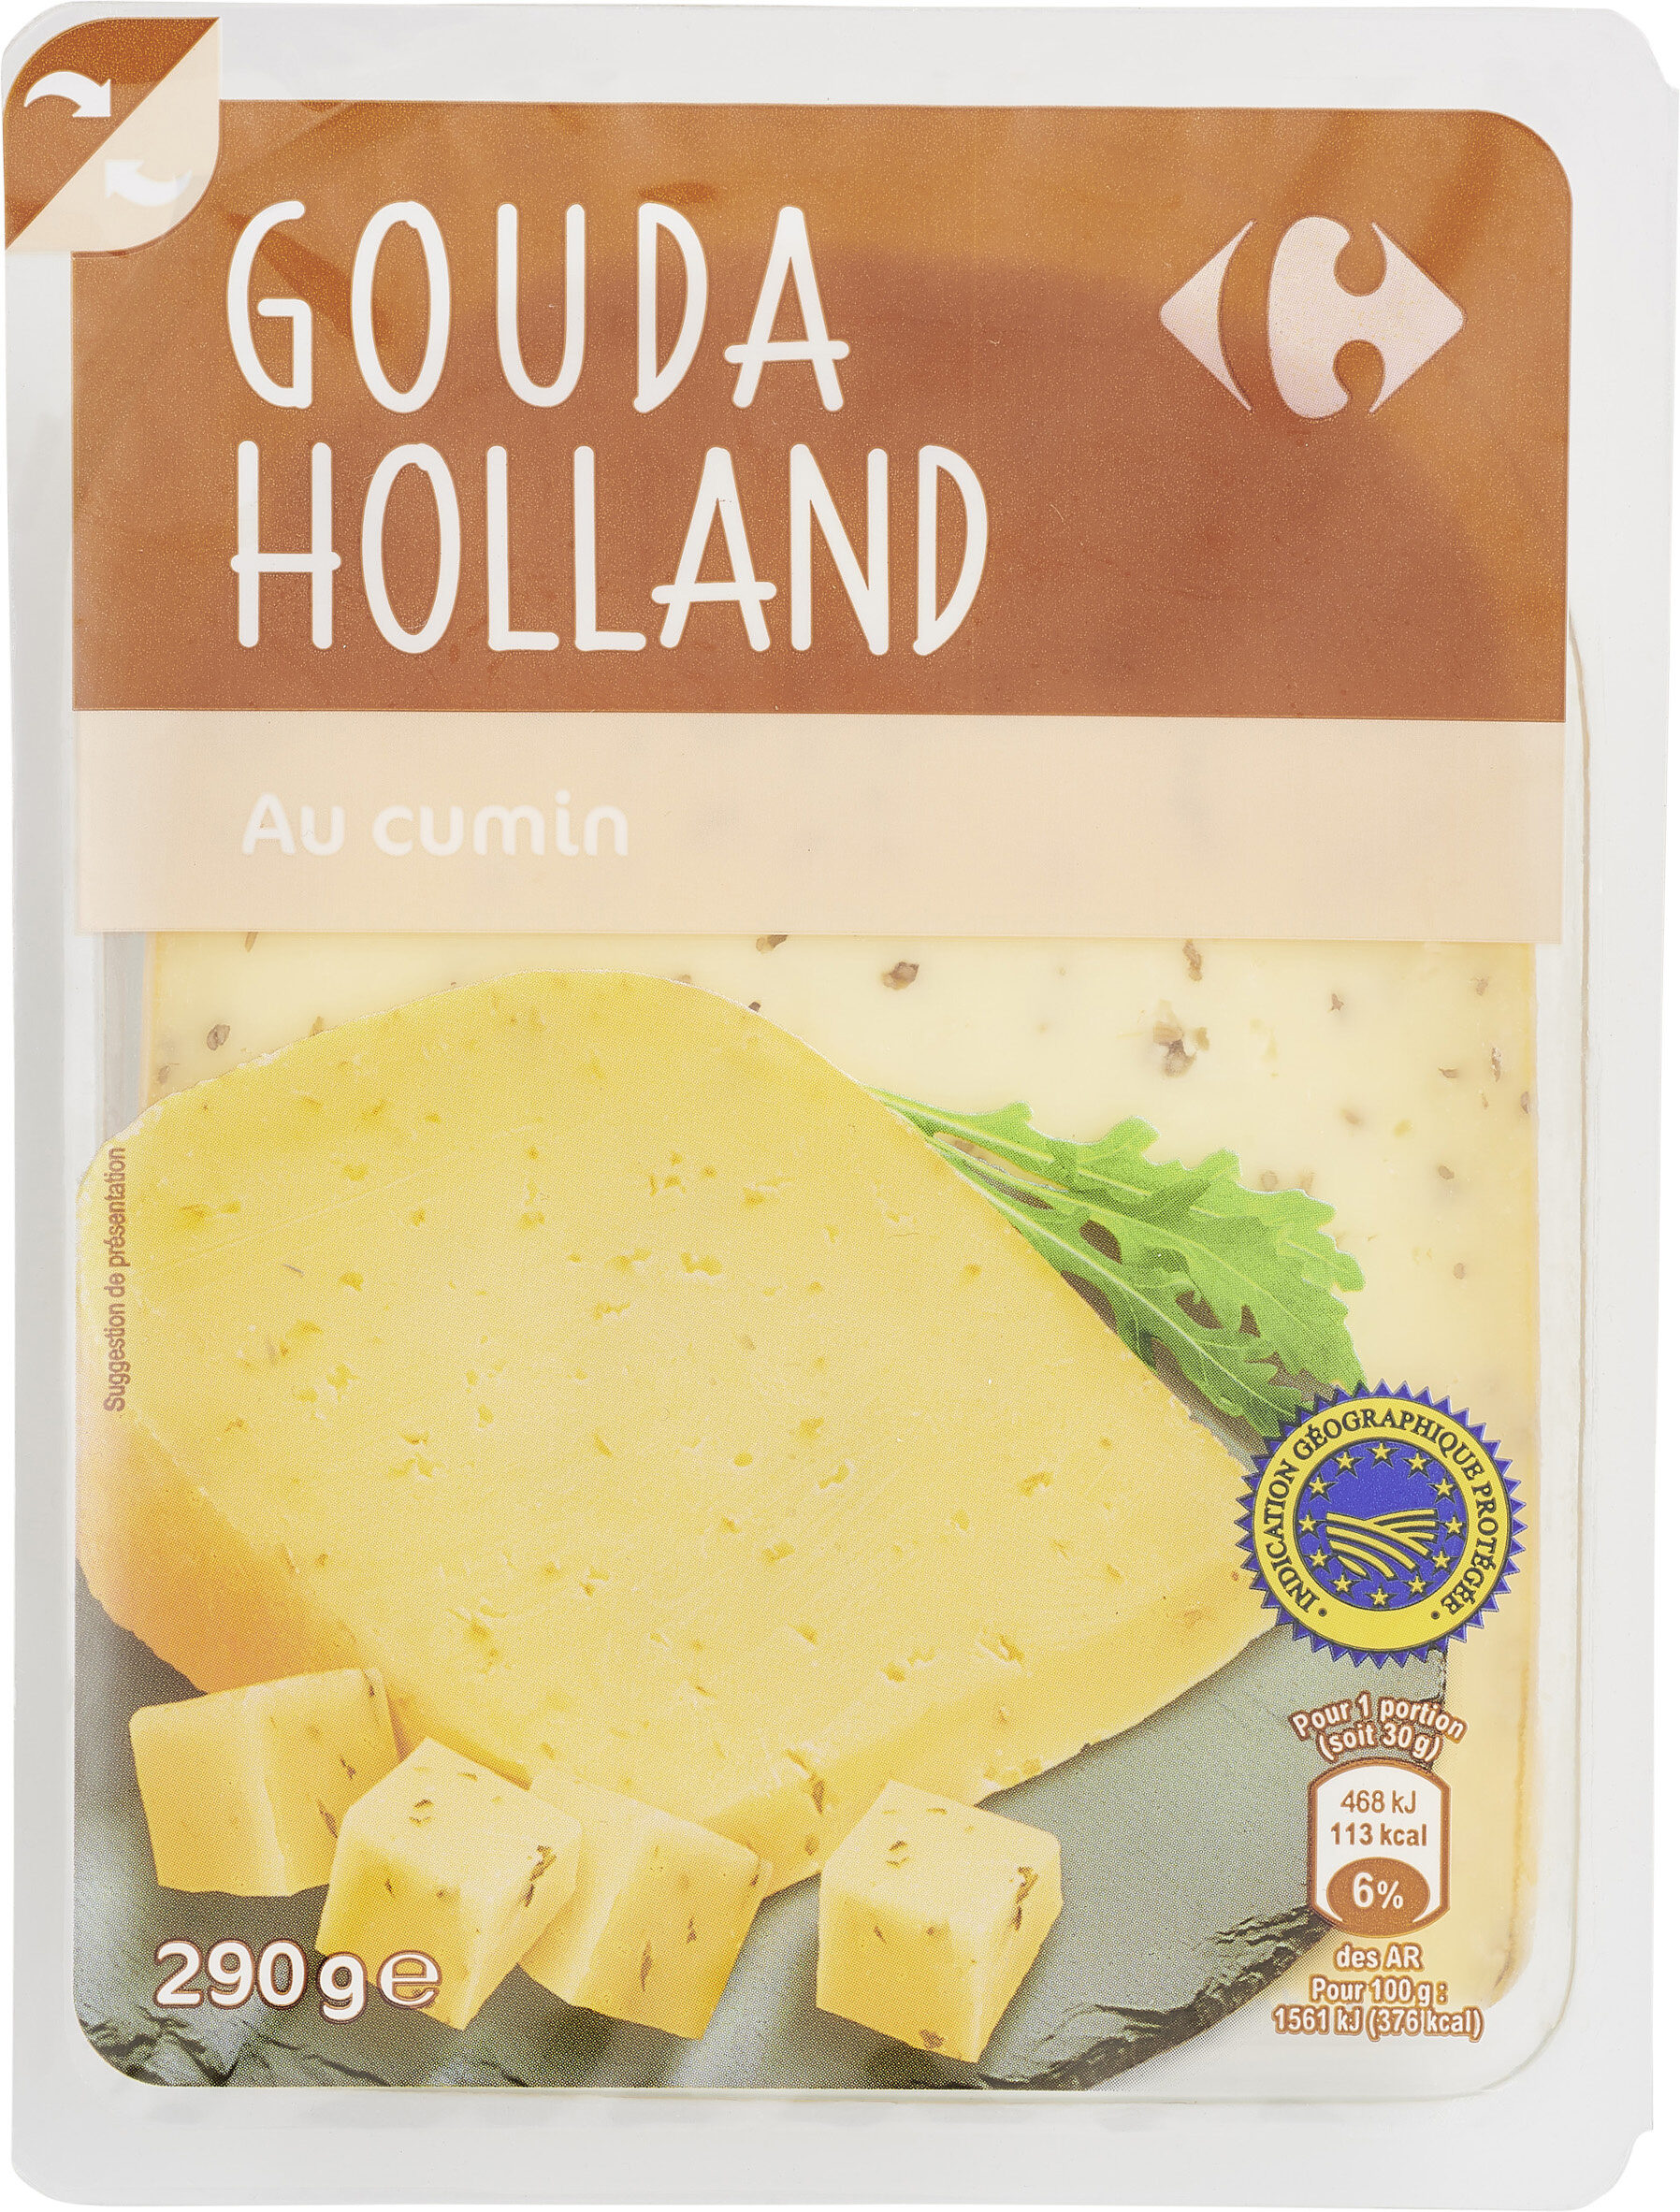 Gouda Holland - Product - fr